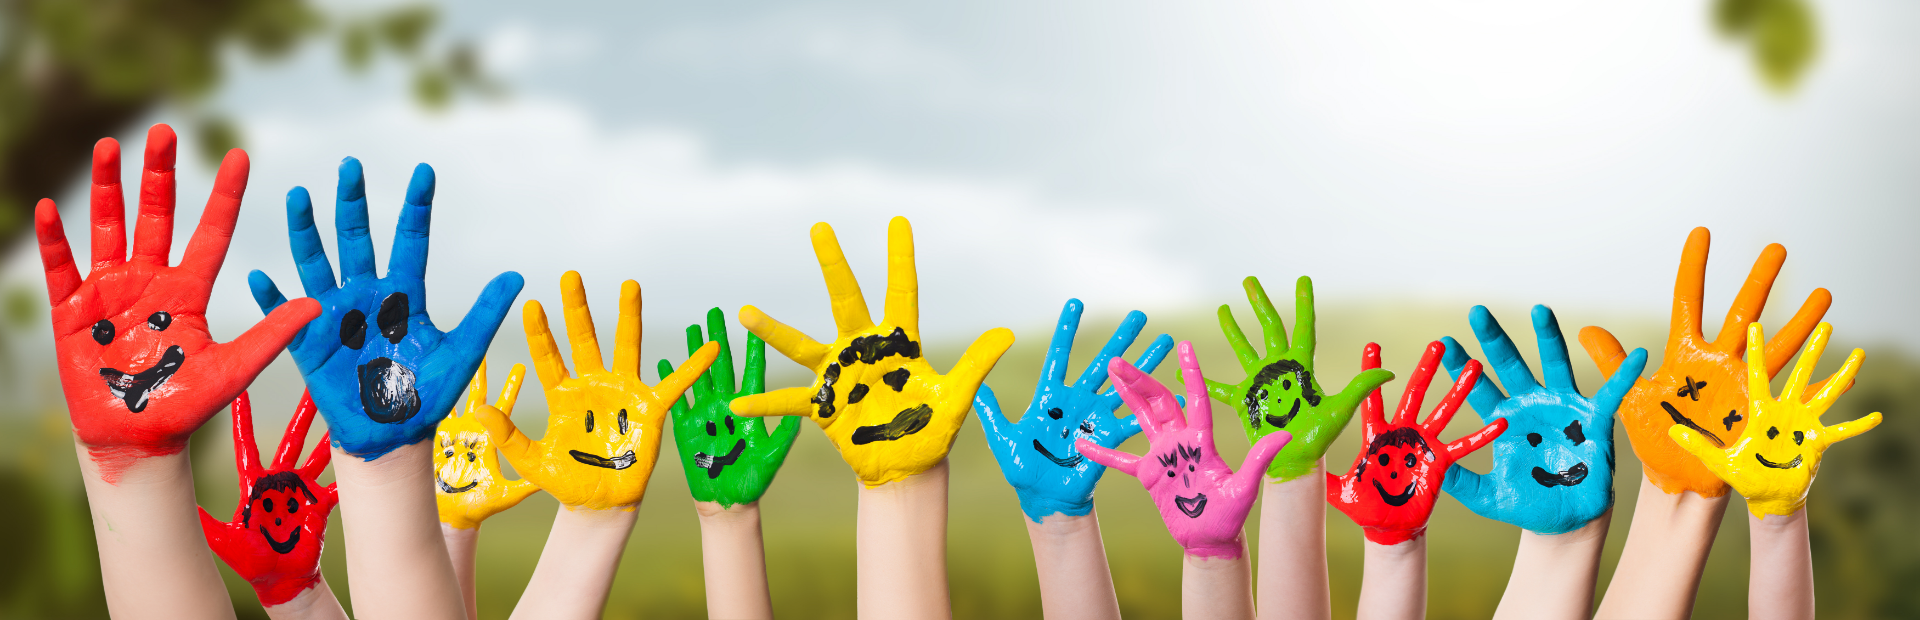 Mit lächelnden Gesichtern bemalte Kinderhände